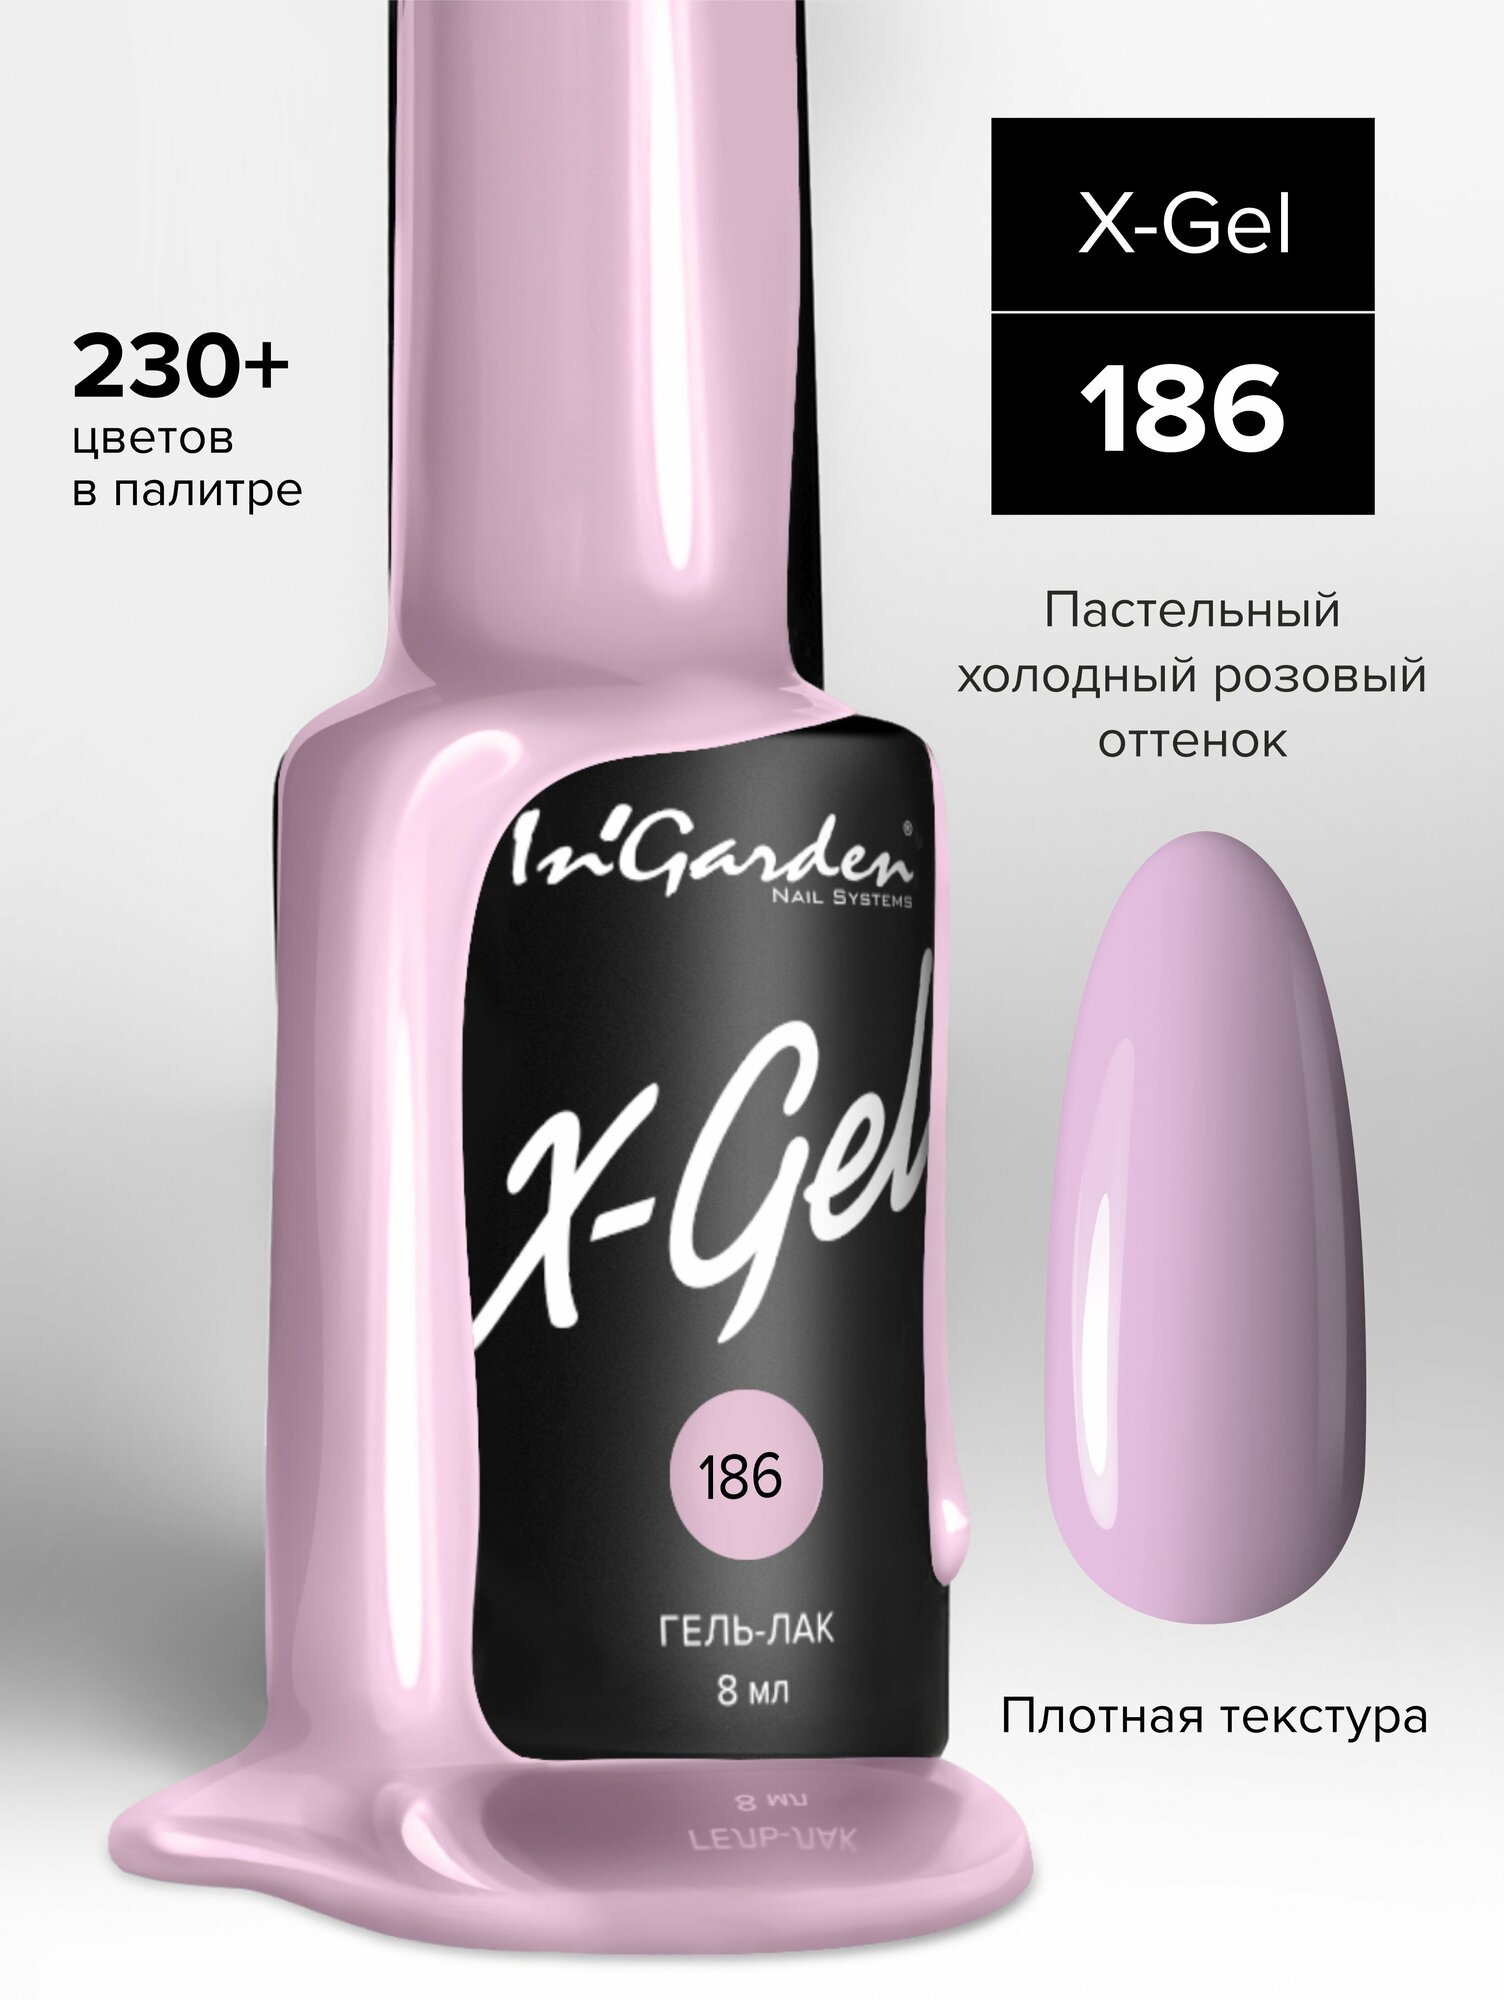 Гель лак для ногтей In’Garden X-Gel N° 186 шеллак, яркий светло-розовый, плотный, 8 мл